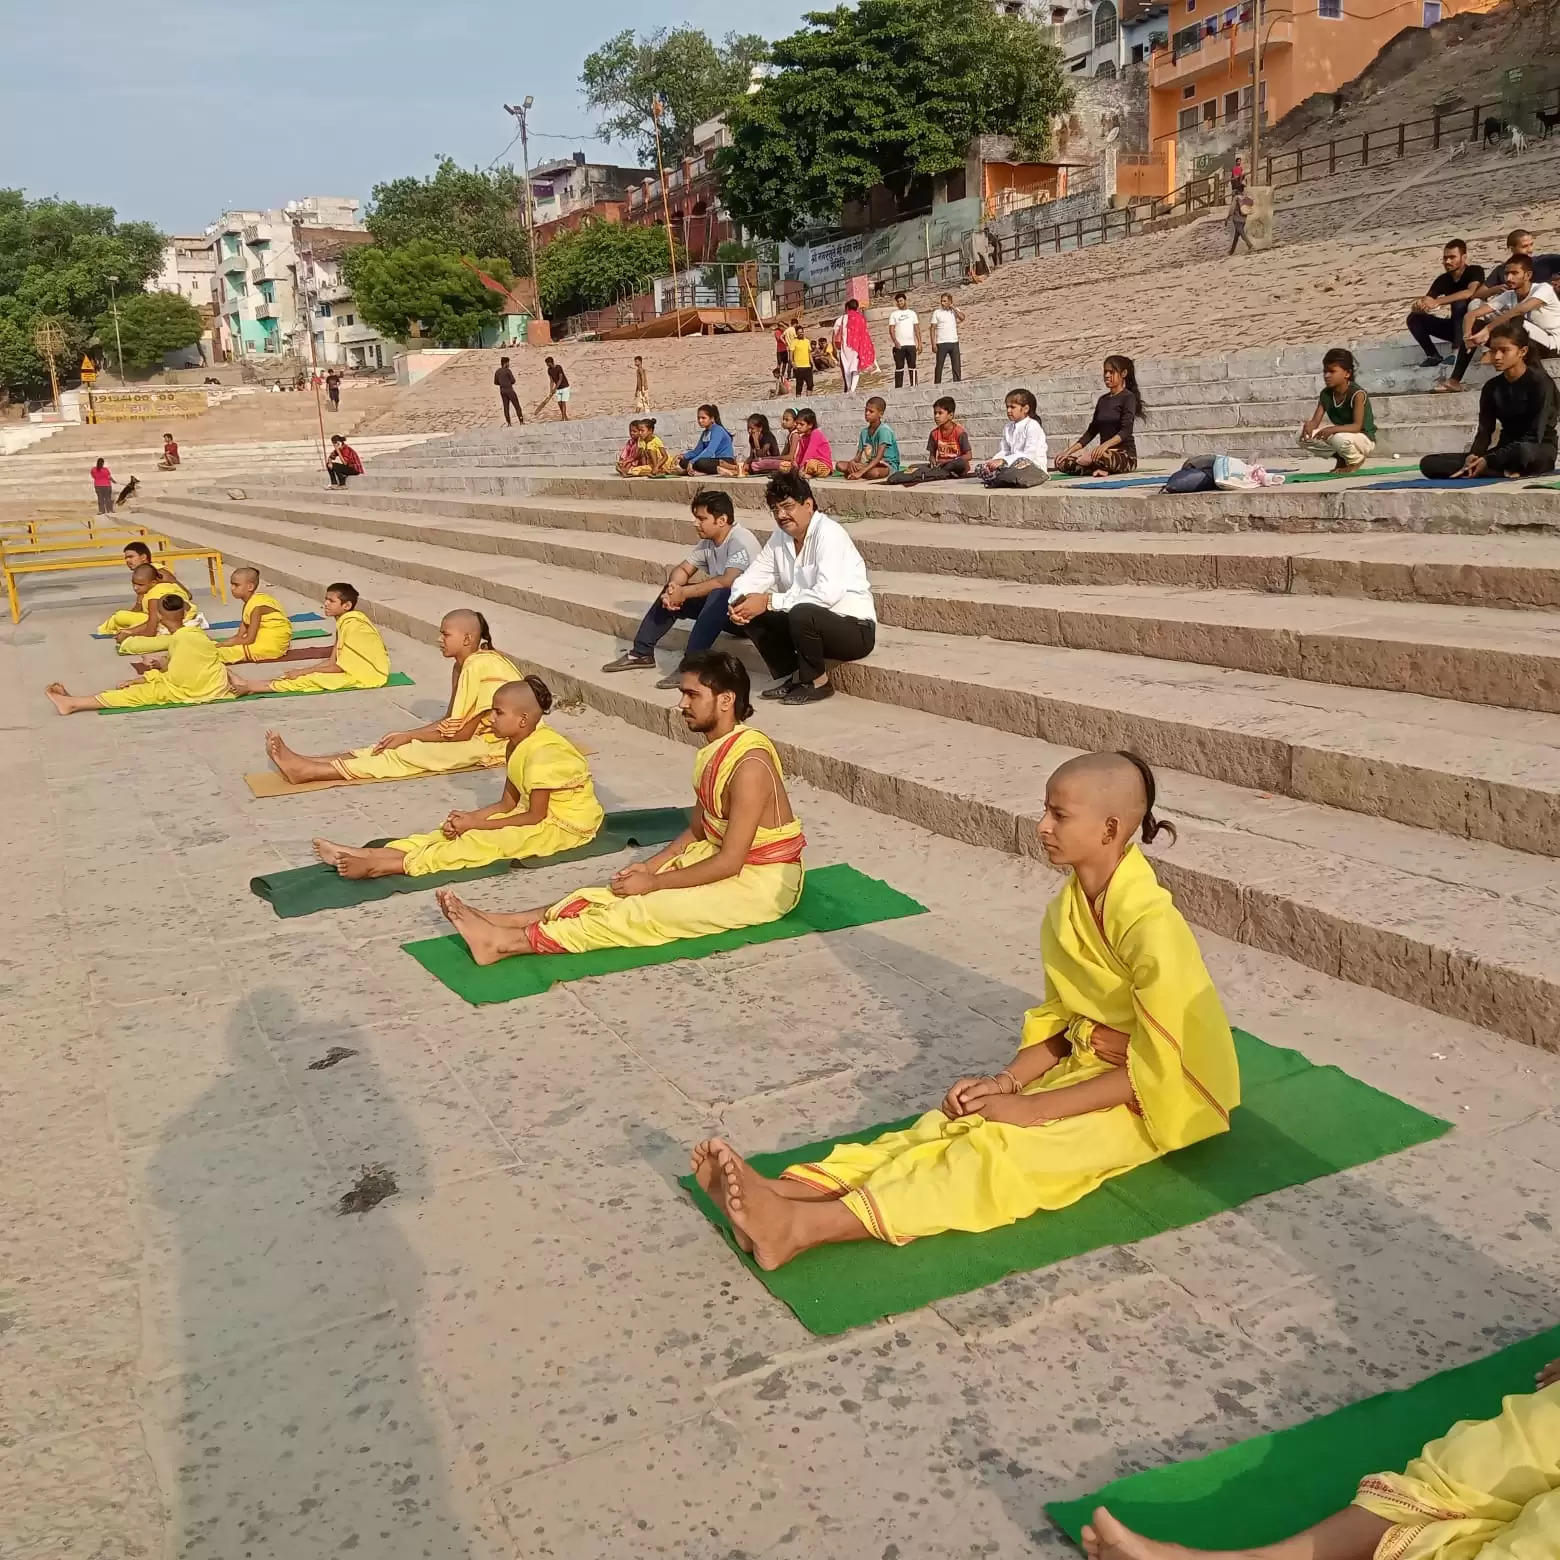 वाराणसी में अमृत योग सप्ताह के अंतर्गत शुक्रवार को 188028 लोगों ने विभिन्न स्थानों पर किया योगाभ्यास